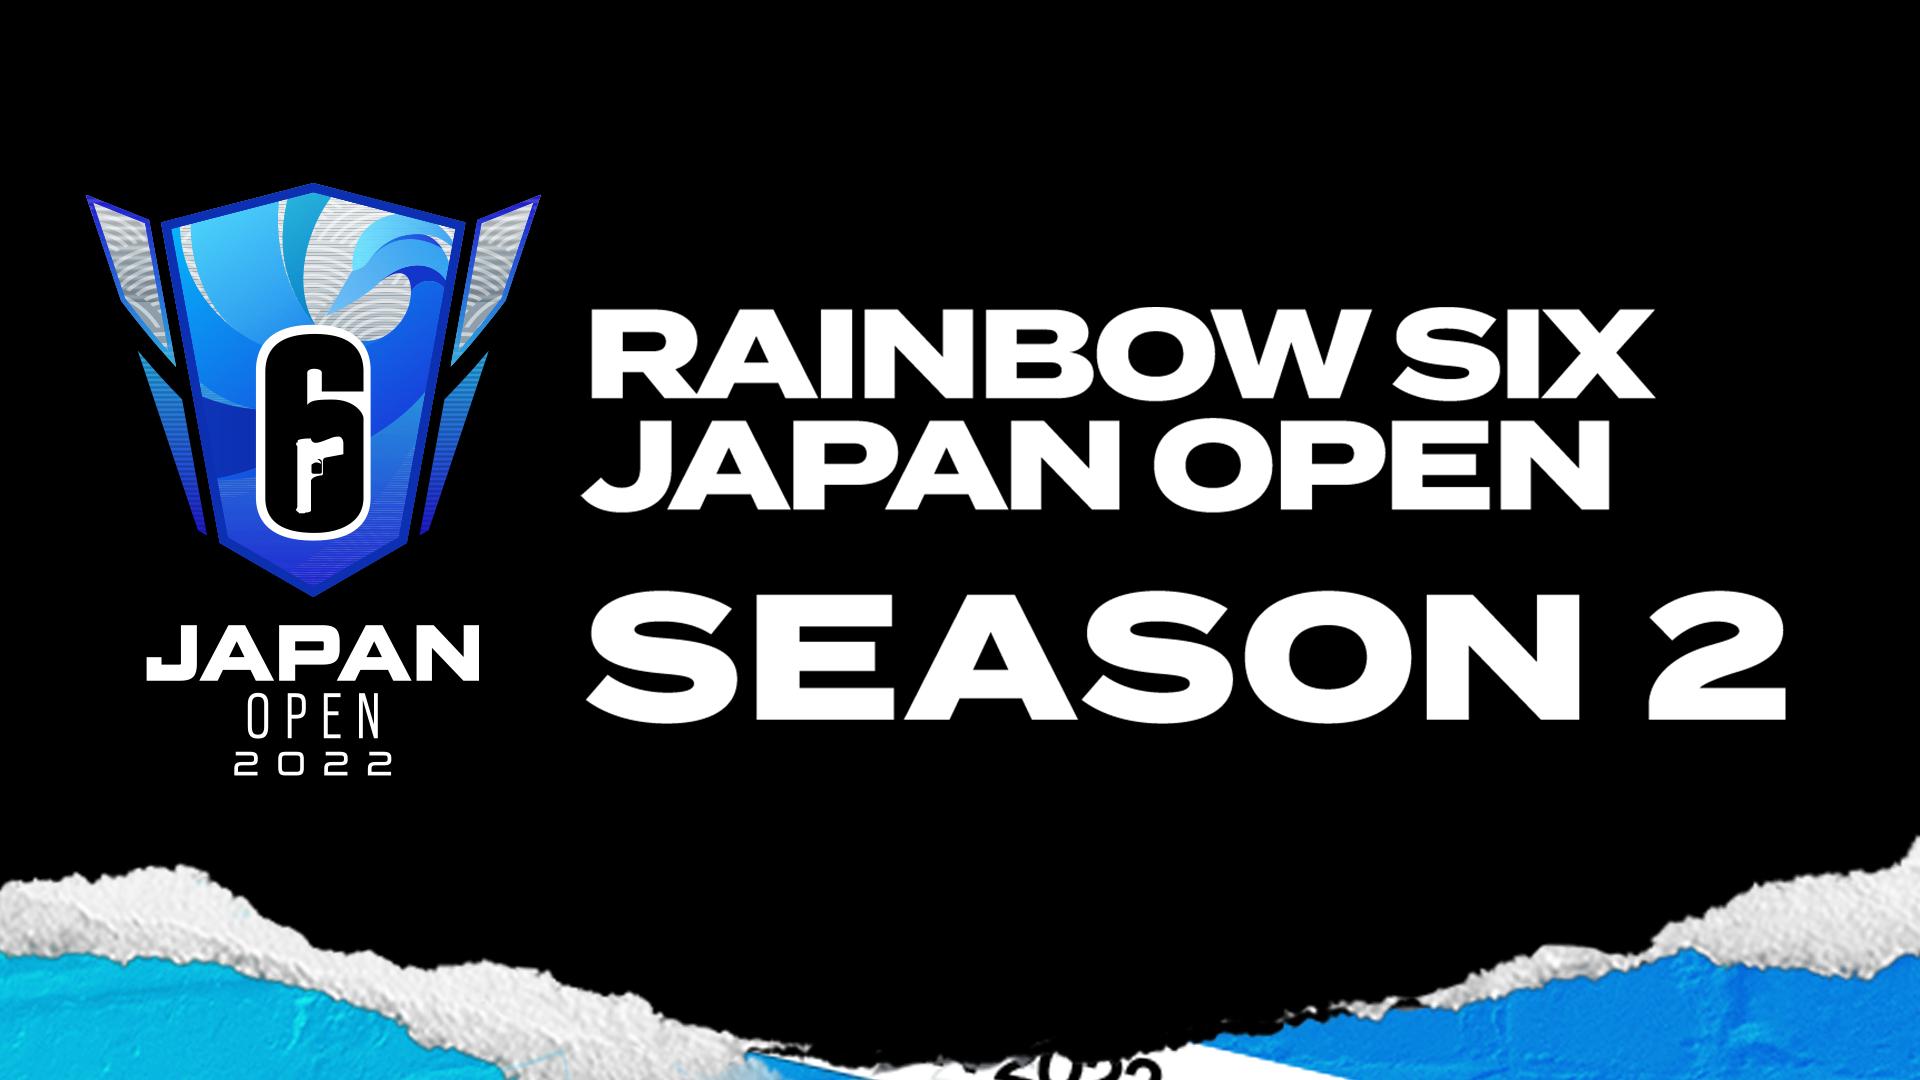 Rainbow Six Japan OPEN 2022 Season 2 feature image